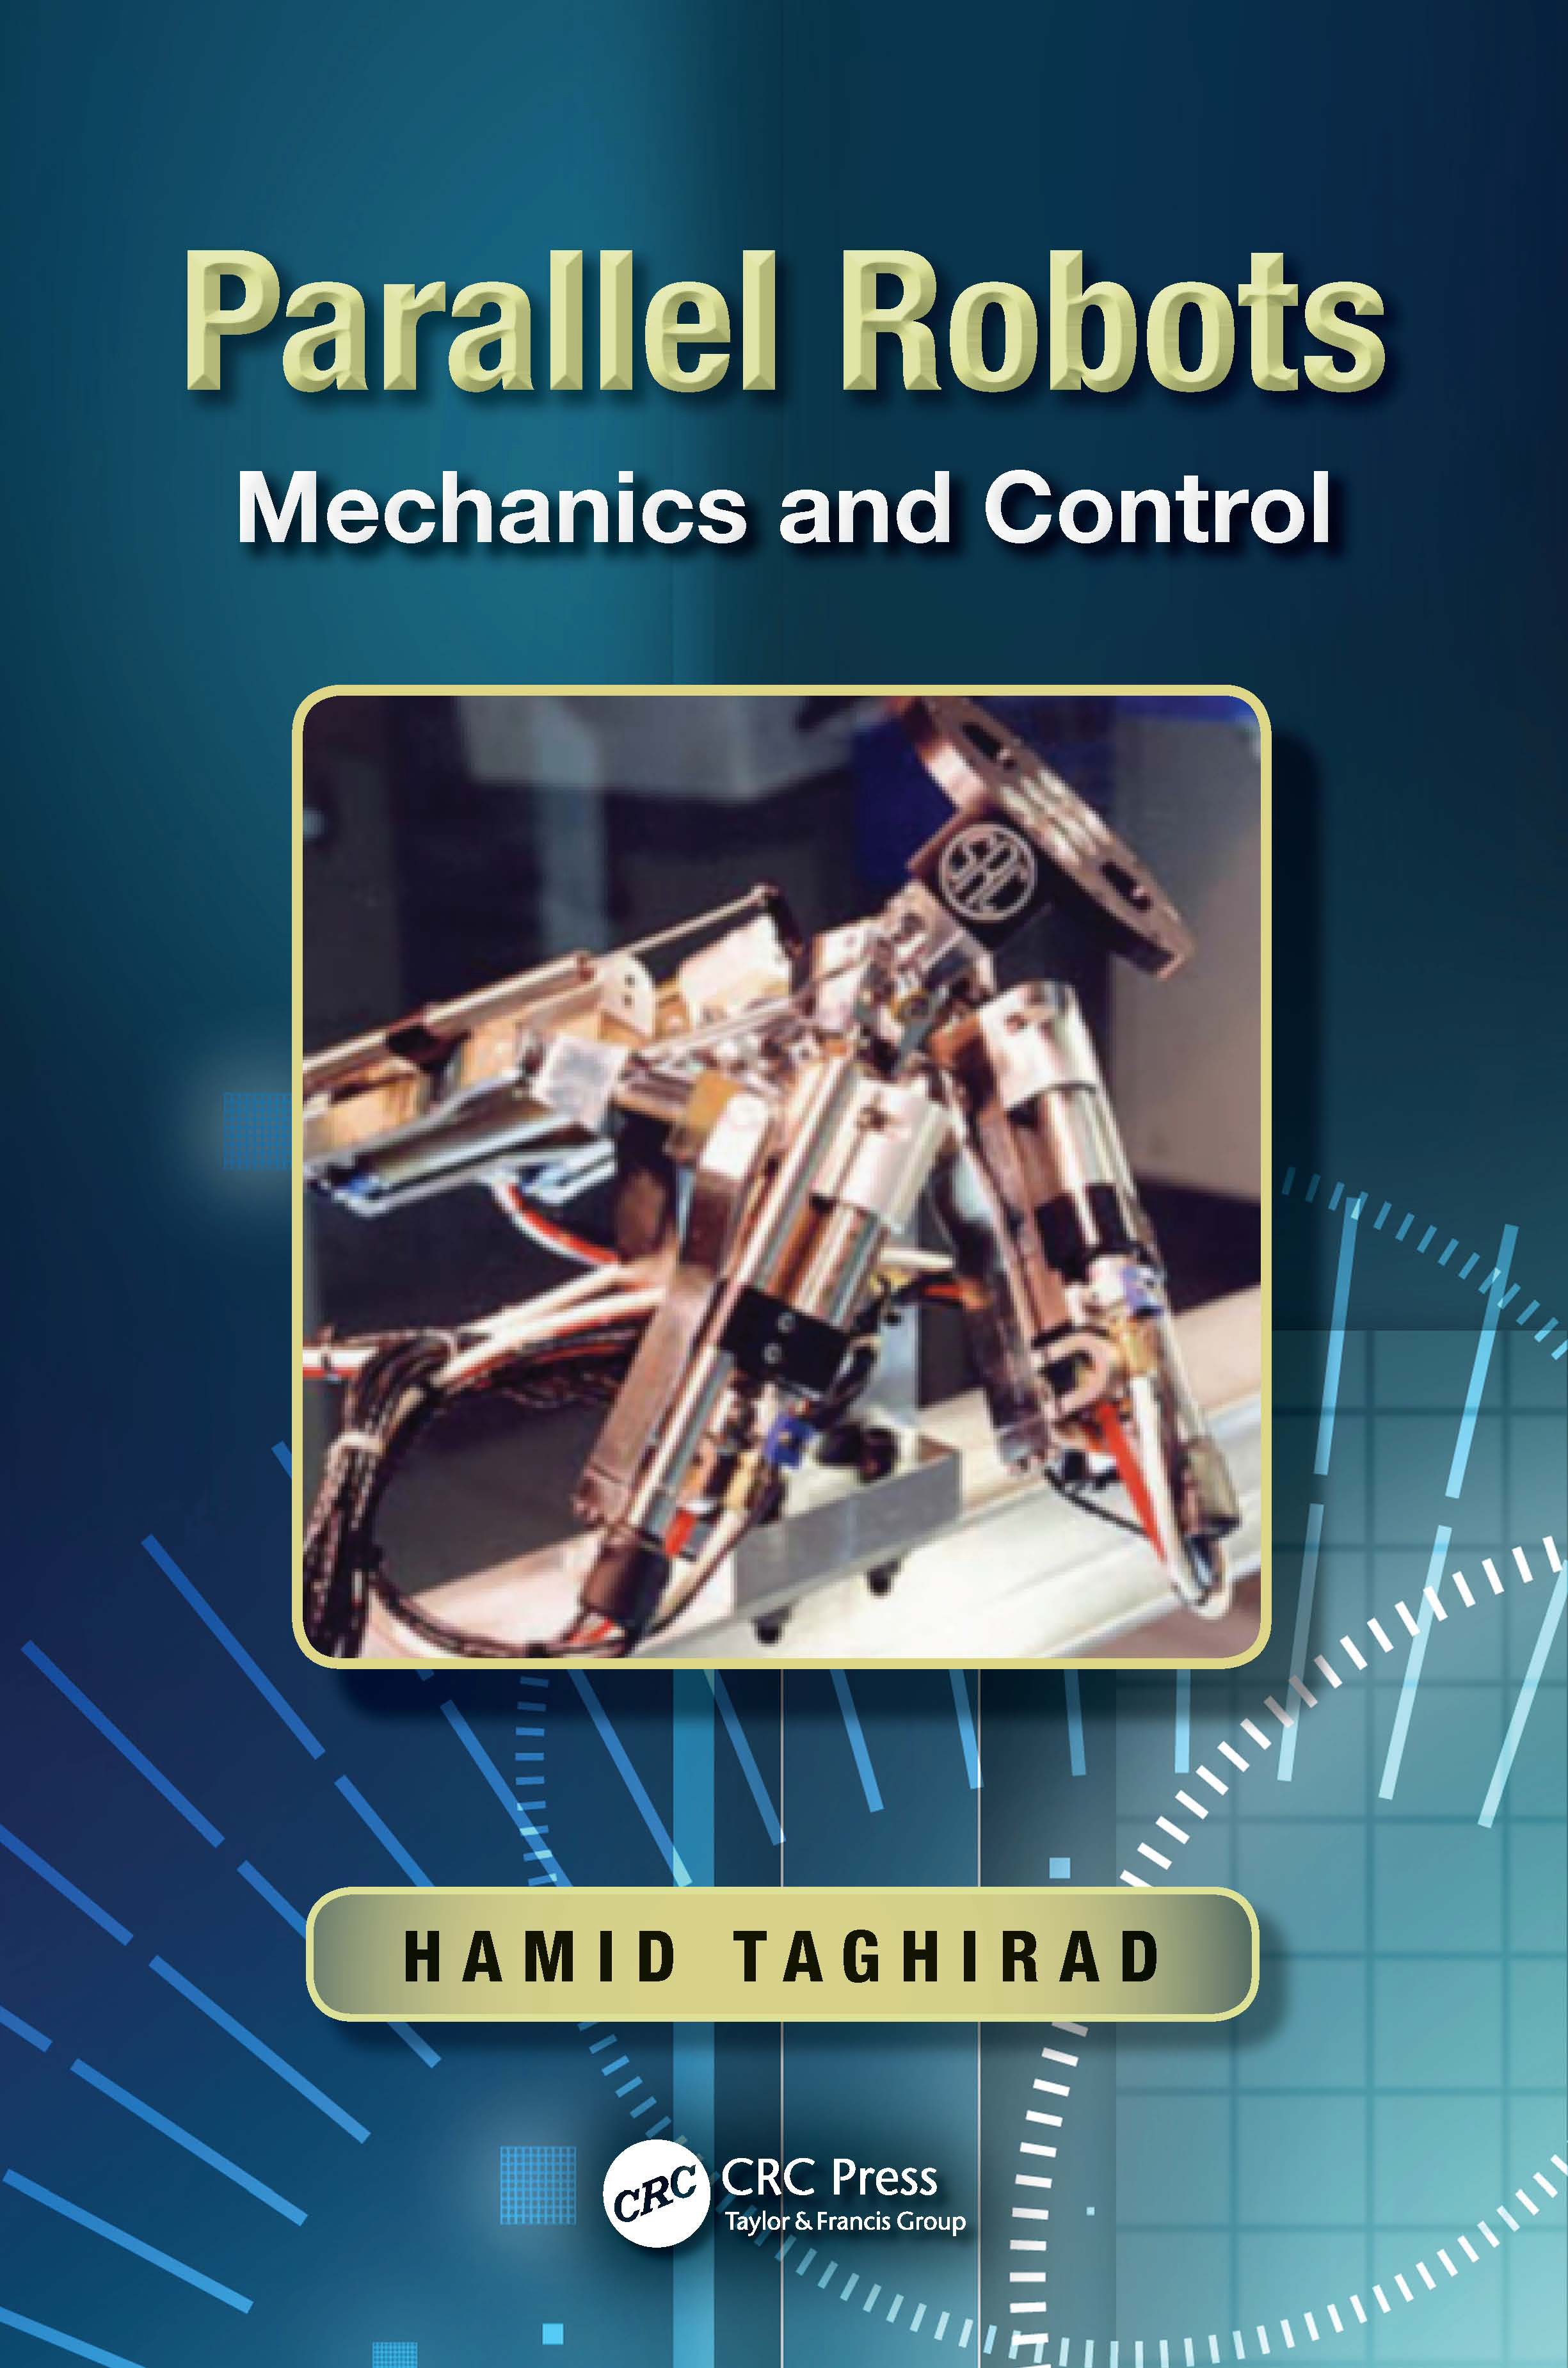 Introduction To Autonomous Mobile Robots Second Edition Download